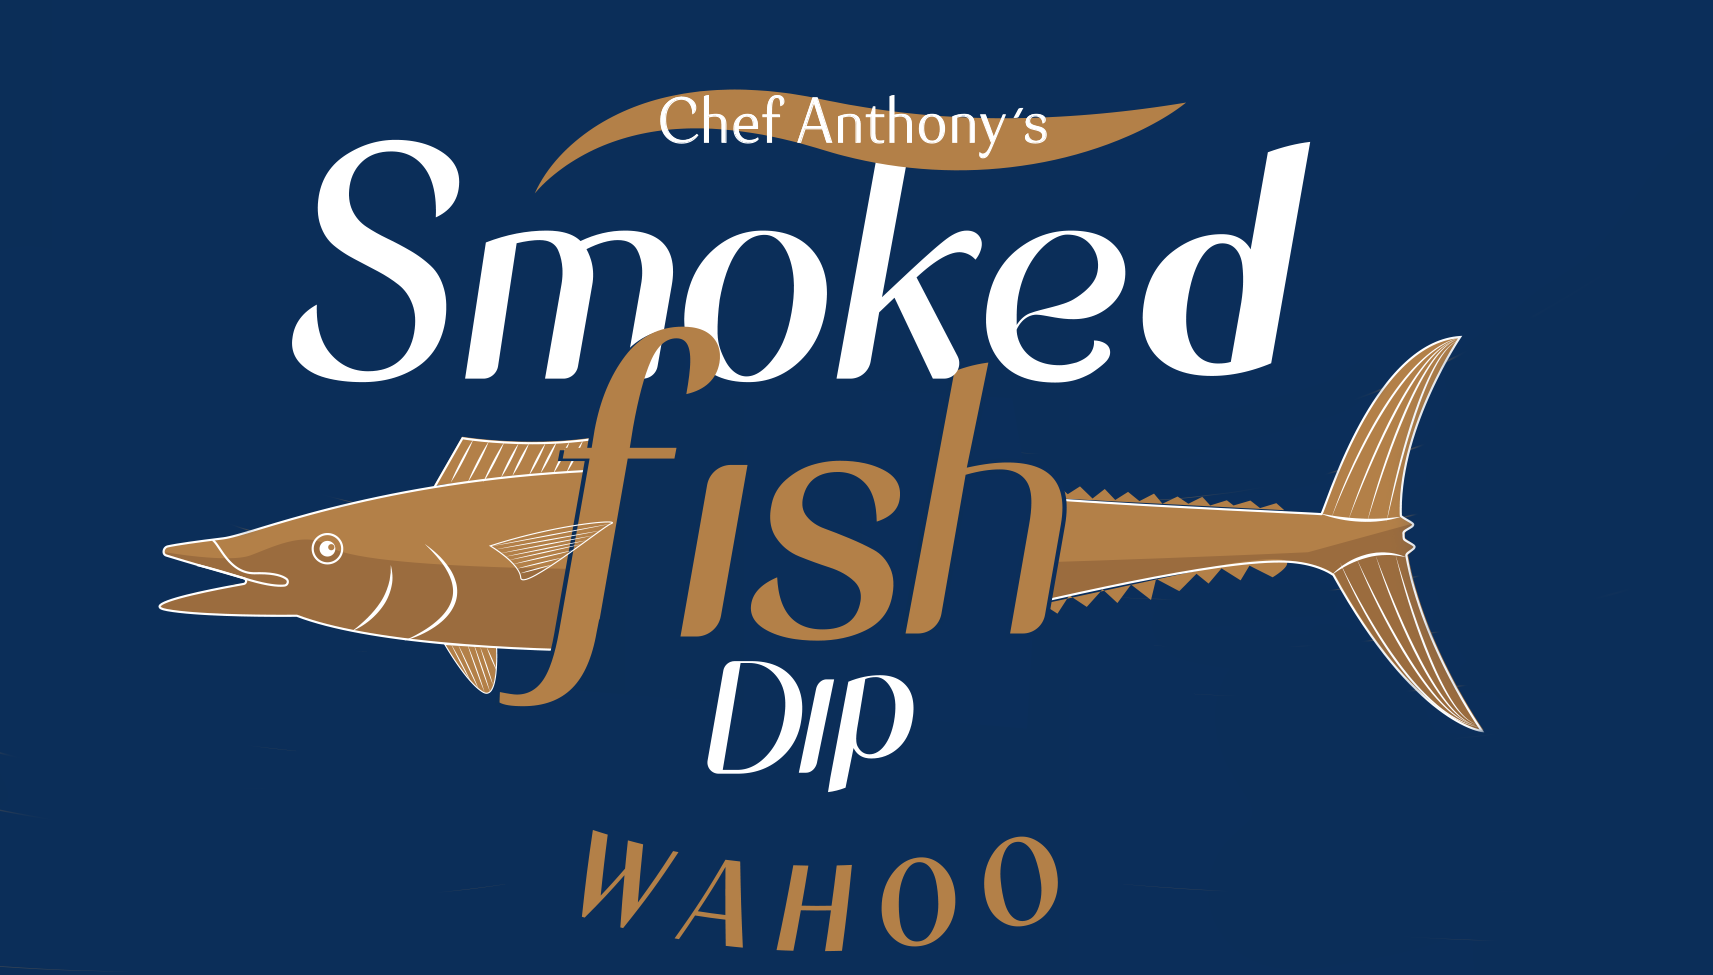 Chef Anthony’s Smoked Fish Dip 